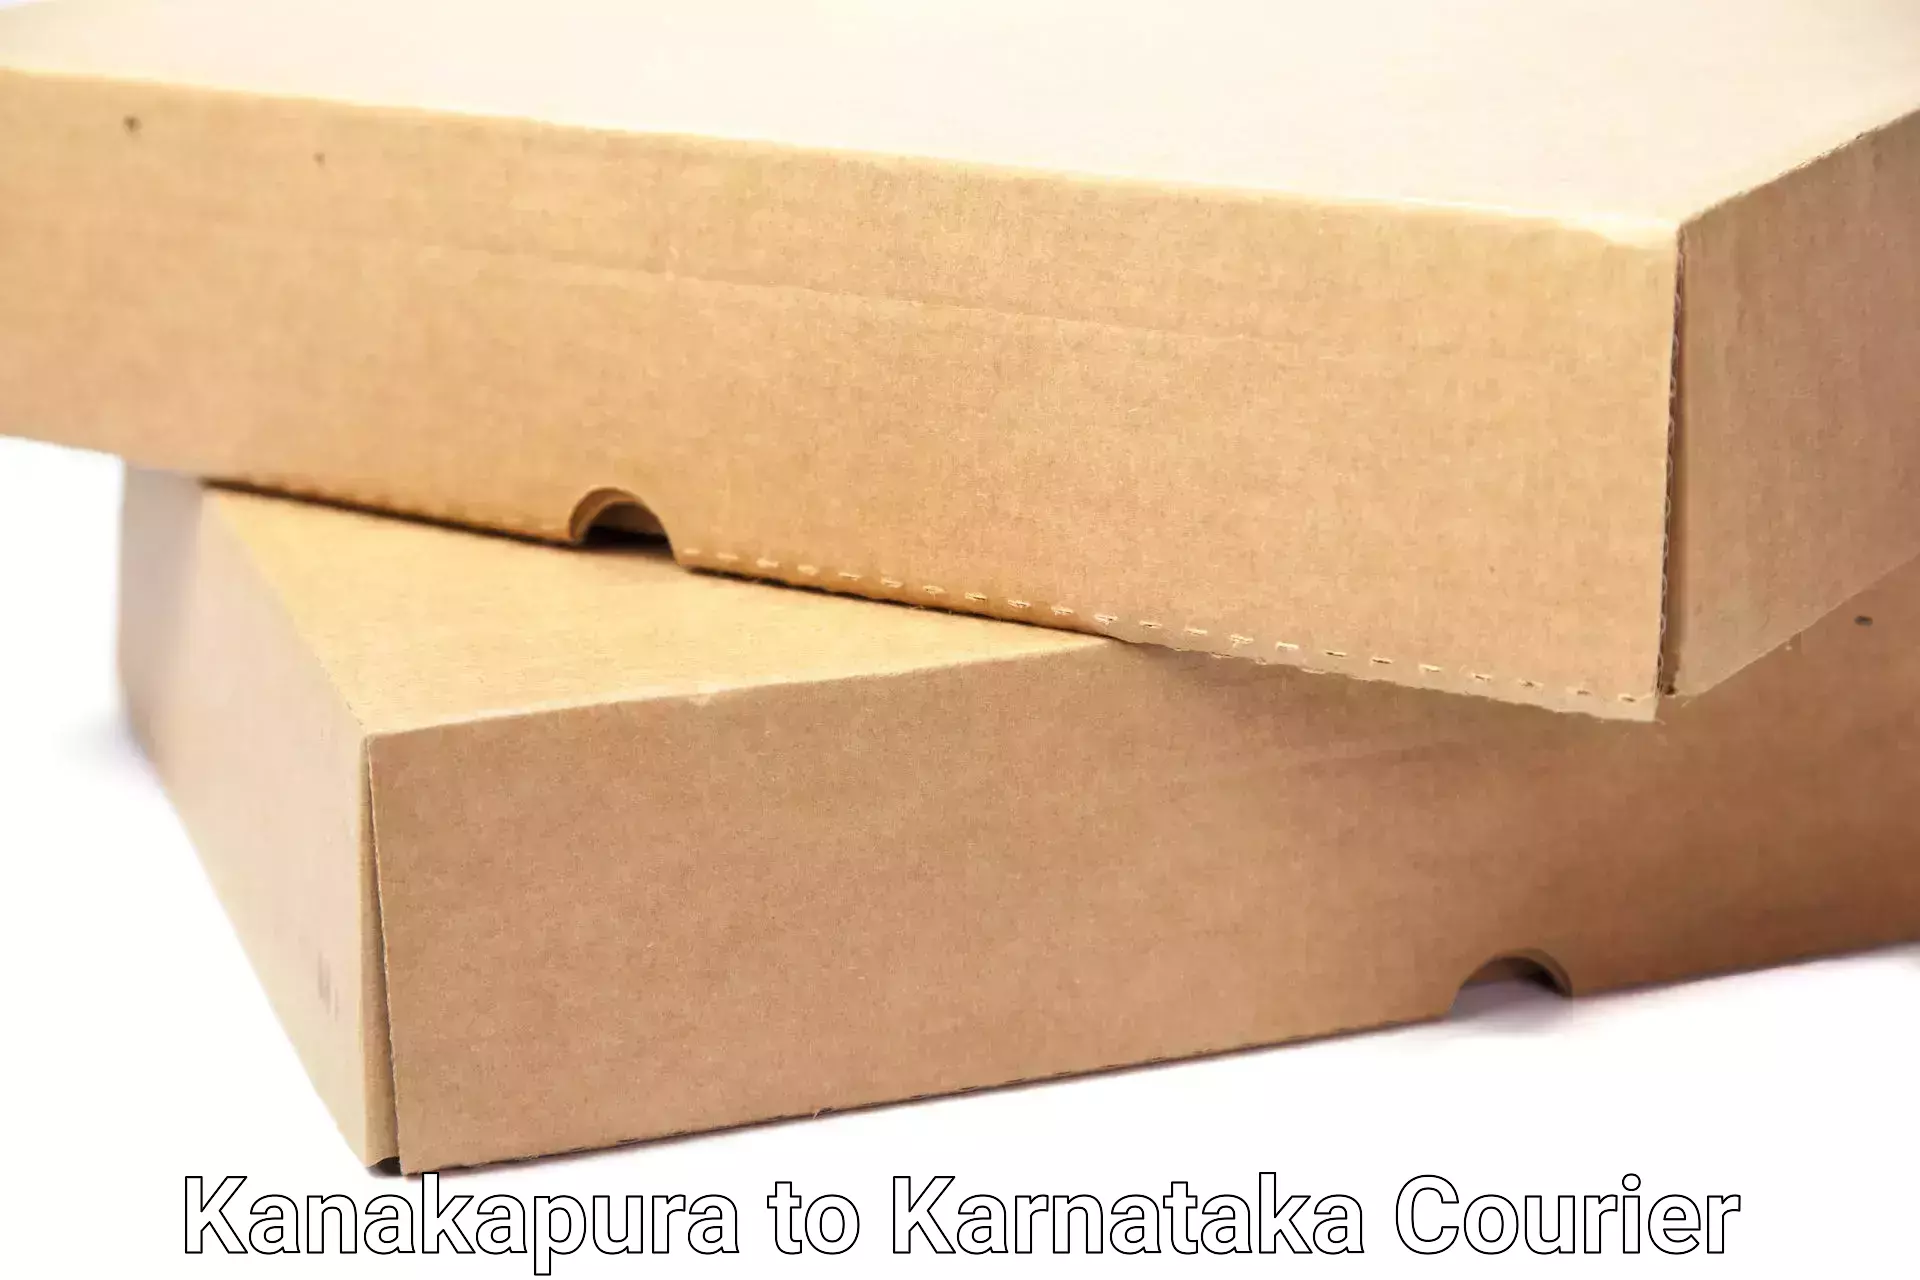 Household moving companies Kanakapura to Kulshekar